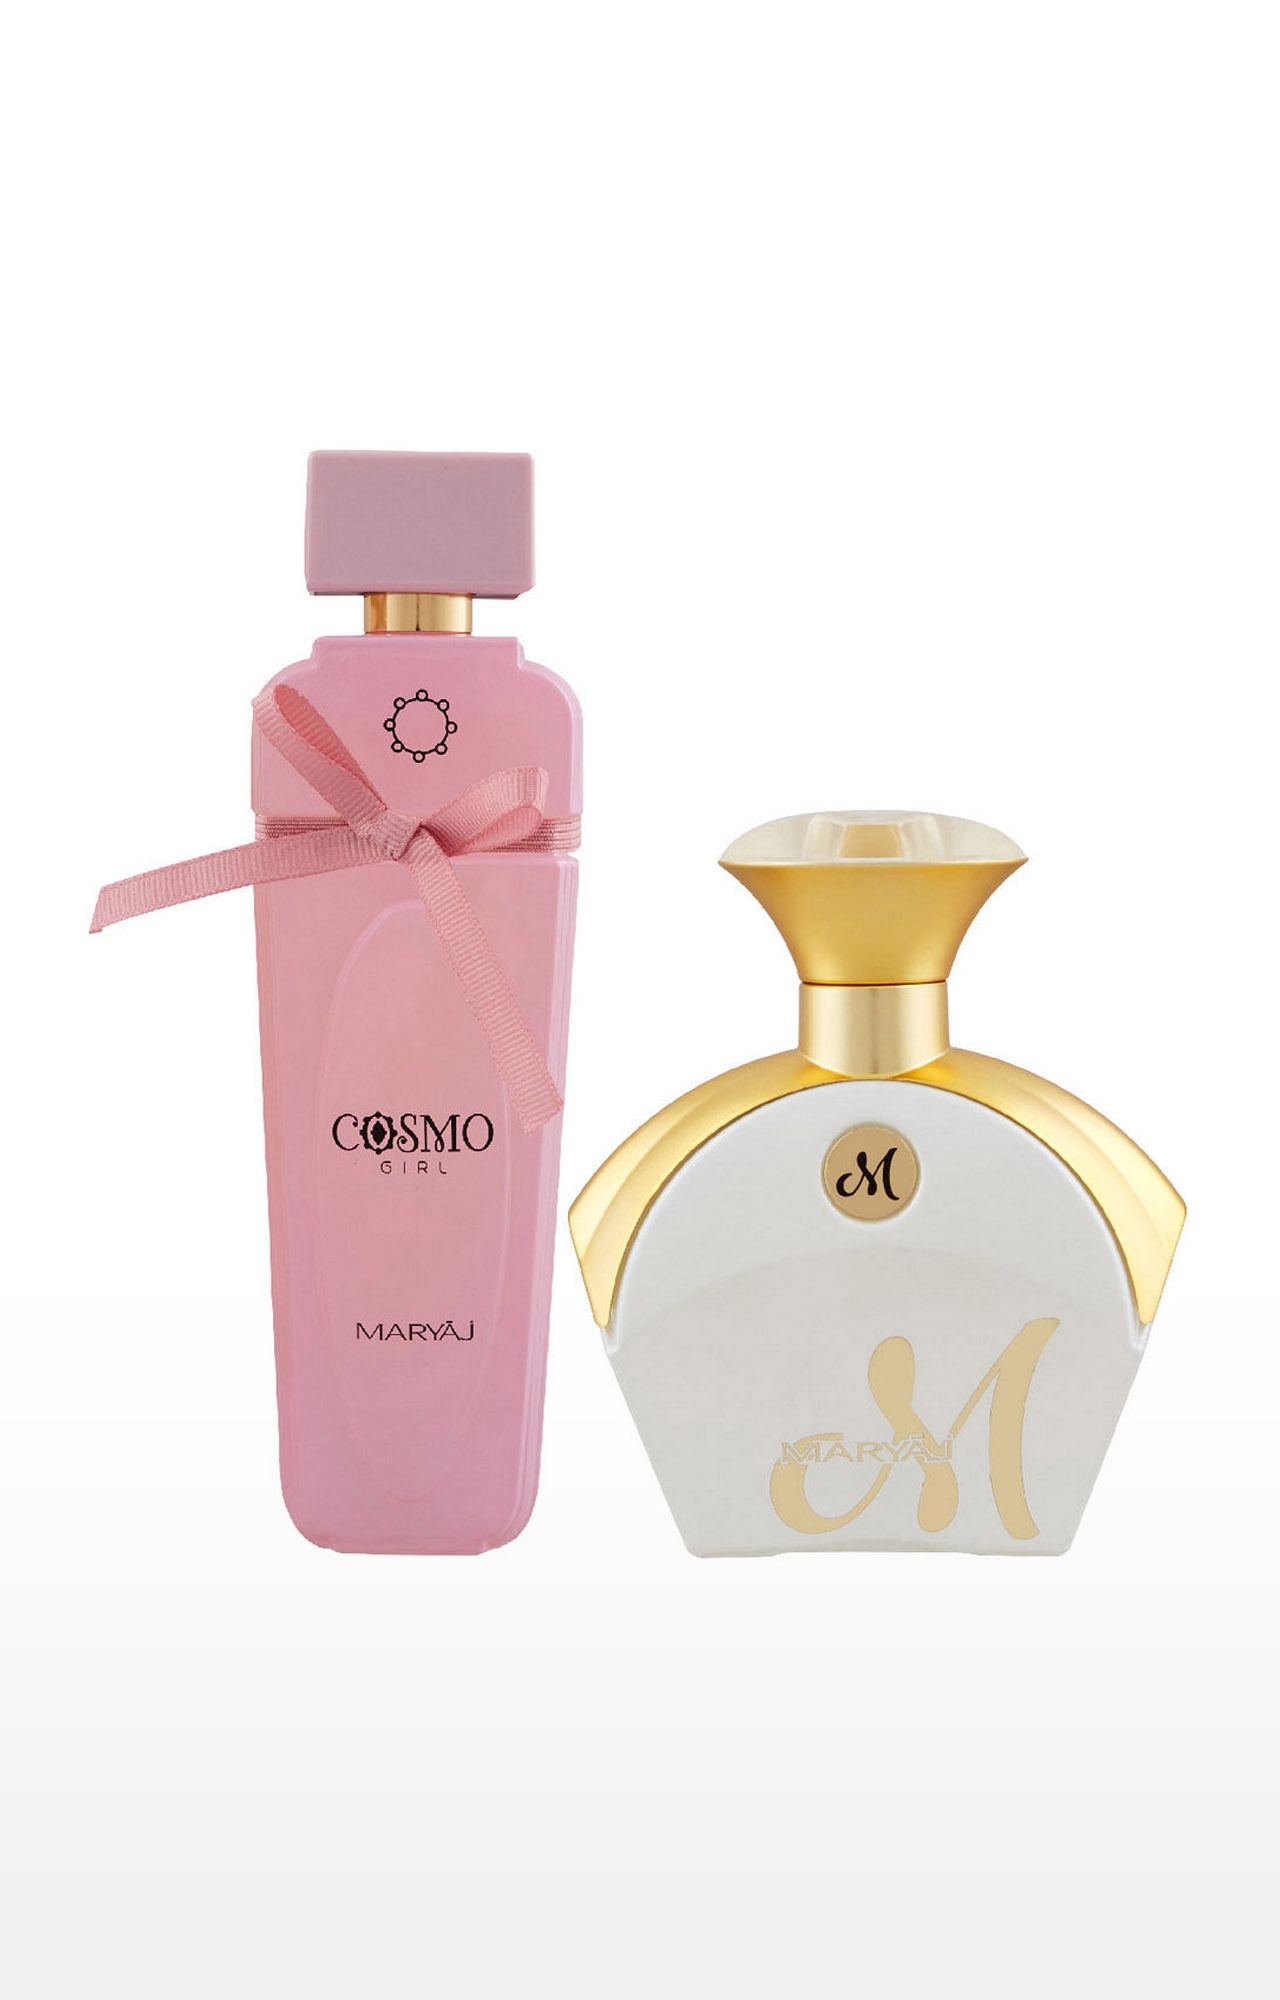 Maryaj | Maryaj Cosmo Girl Eau De Parfum Perfume 100ml for Women and Maryaj M White for Her Eau De Parfum Fruity Perfume 90ml for Women 0